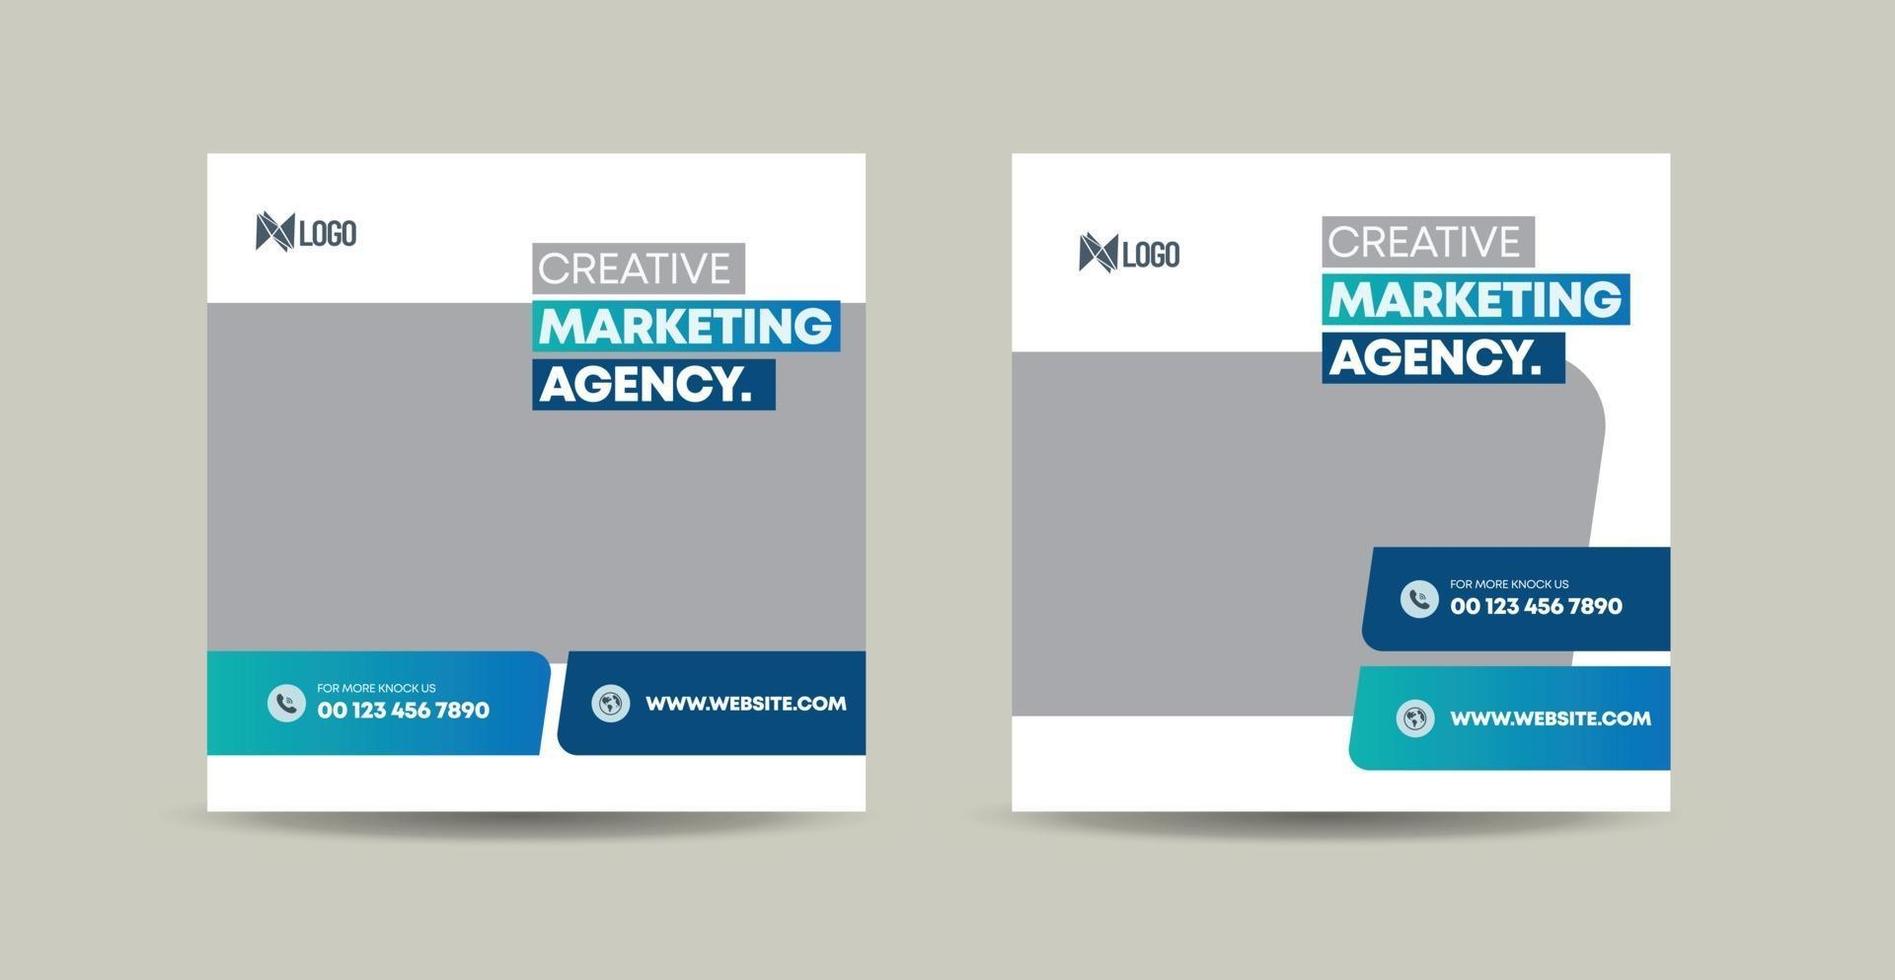 Business Social Media Post Design or Website Product Banner Design or Web Advert Design vector